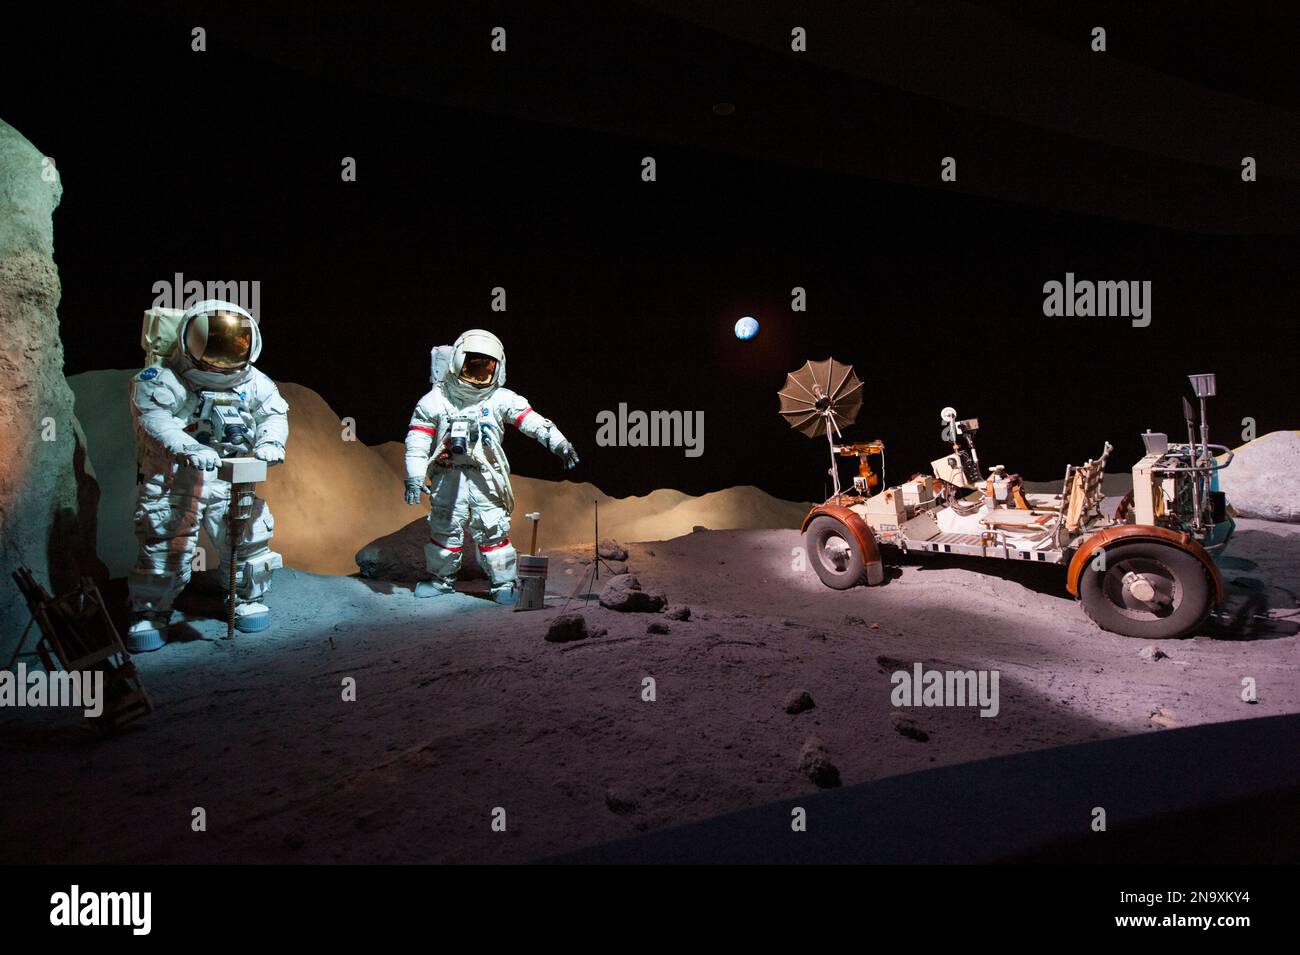 Exposition de deux astronautes et du Rover lunaire au Johnson Space Center à Houston, Texas, USA ; Webster, Texas, États-Unis d'Amérique Banque D'Images